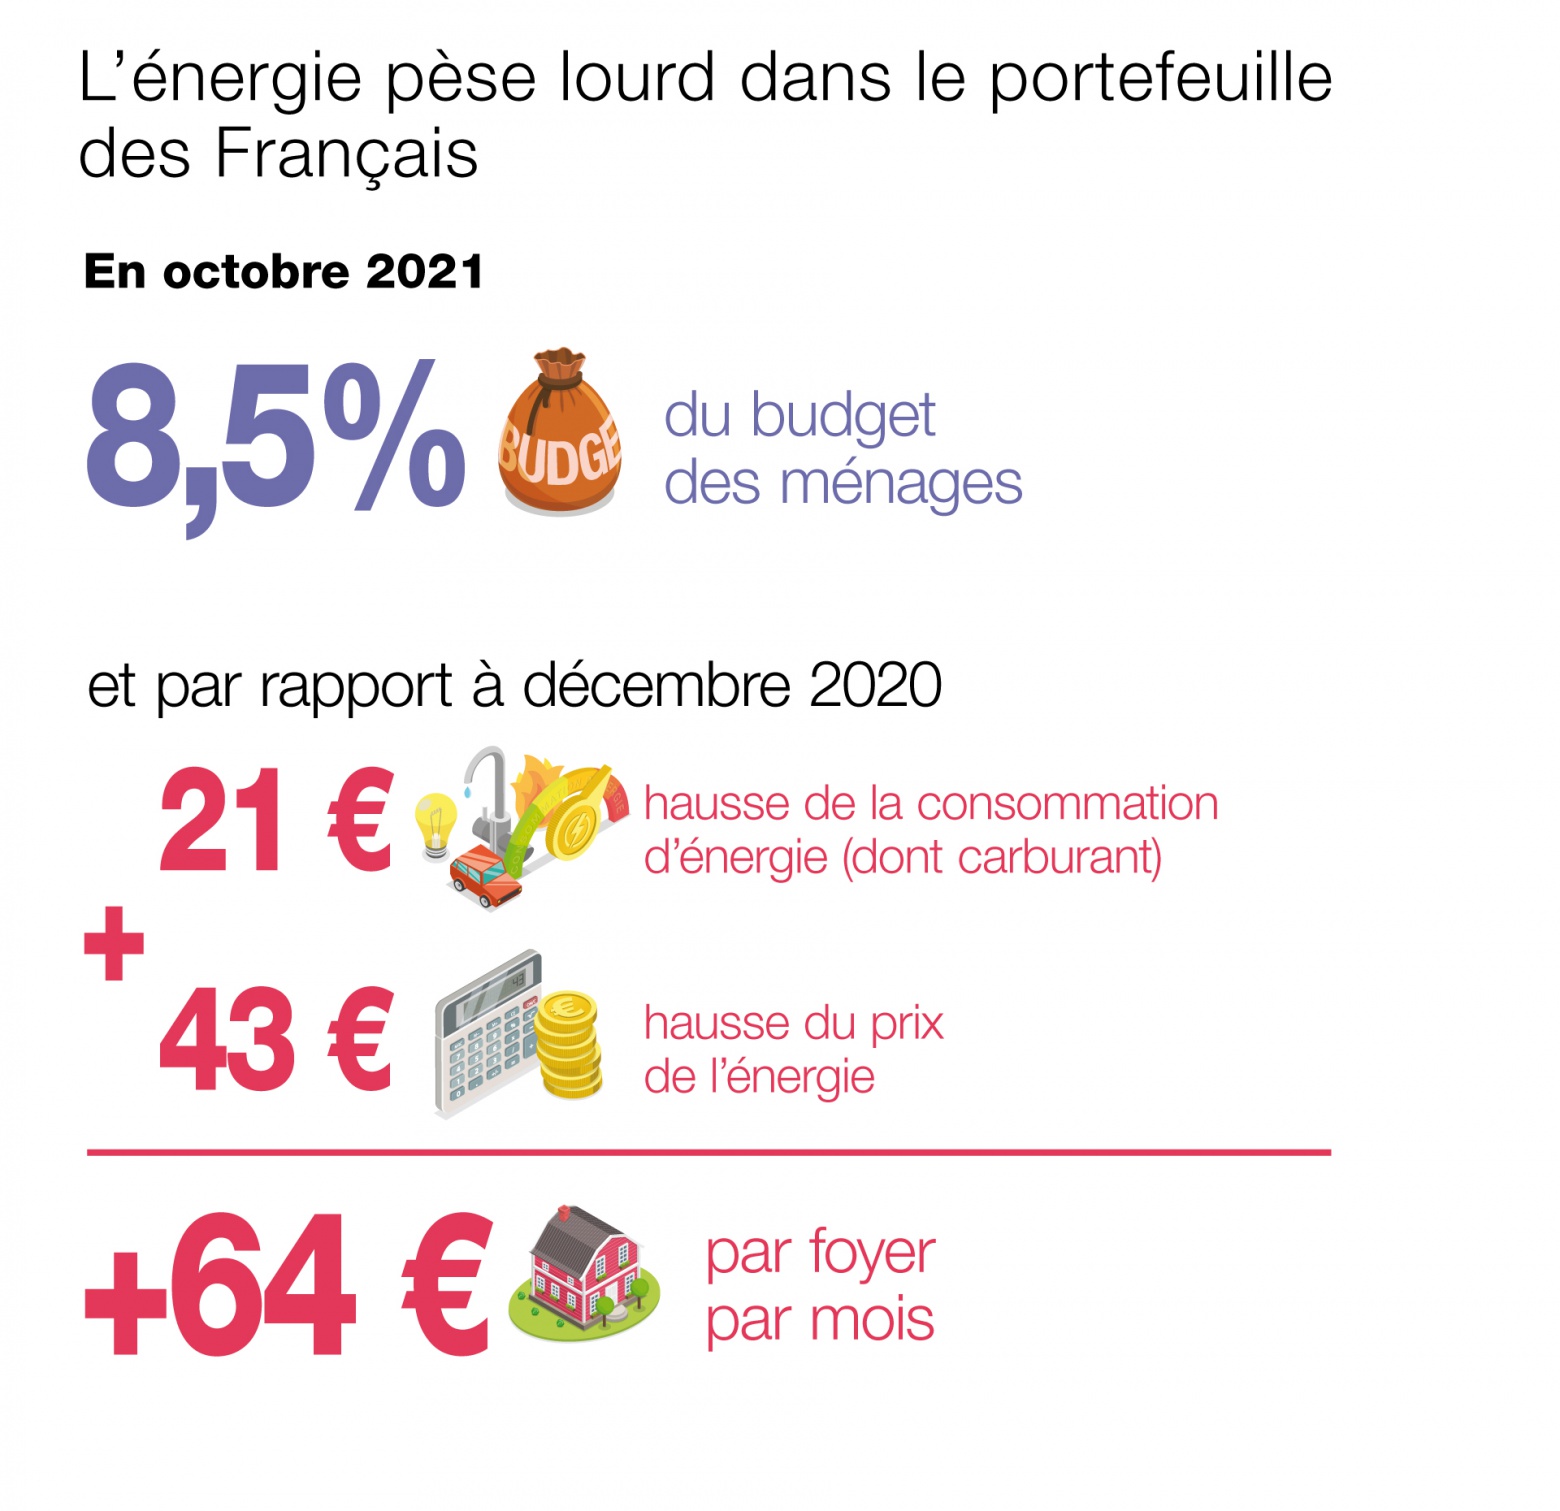 L’énergie plombe le portefeuille des Français (infographie)
•	8,5 % du budget des ménages 
•	En octobre 2021, + 64 € par foyer/mois, par rapport à  décembre 2020
La hausse des prix a conduit en octobre 2021 à un surcroît de dépenses mensuelles d’énergie de 30 € en moyenne par ménage par rapport à fin 2019, dont 8 € du fait des prix des carburants)